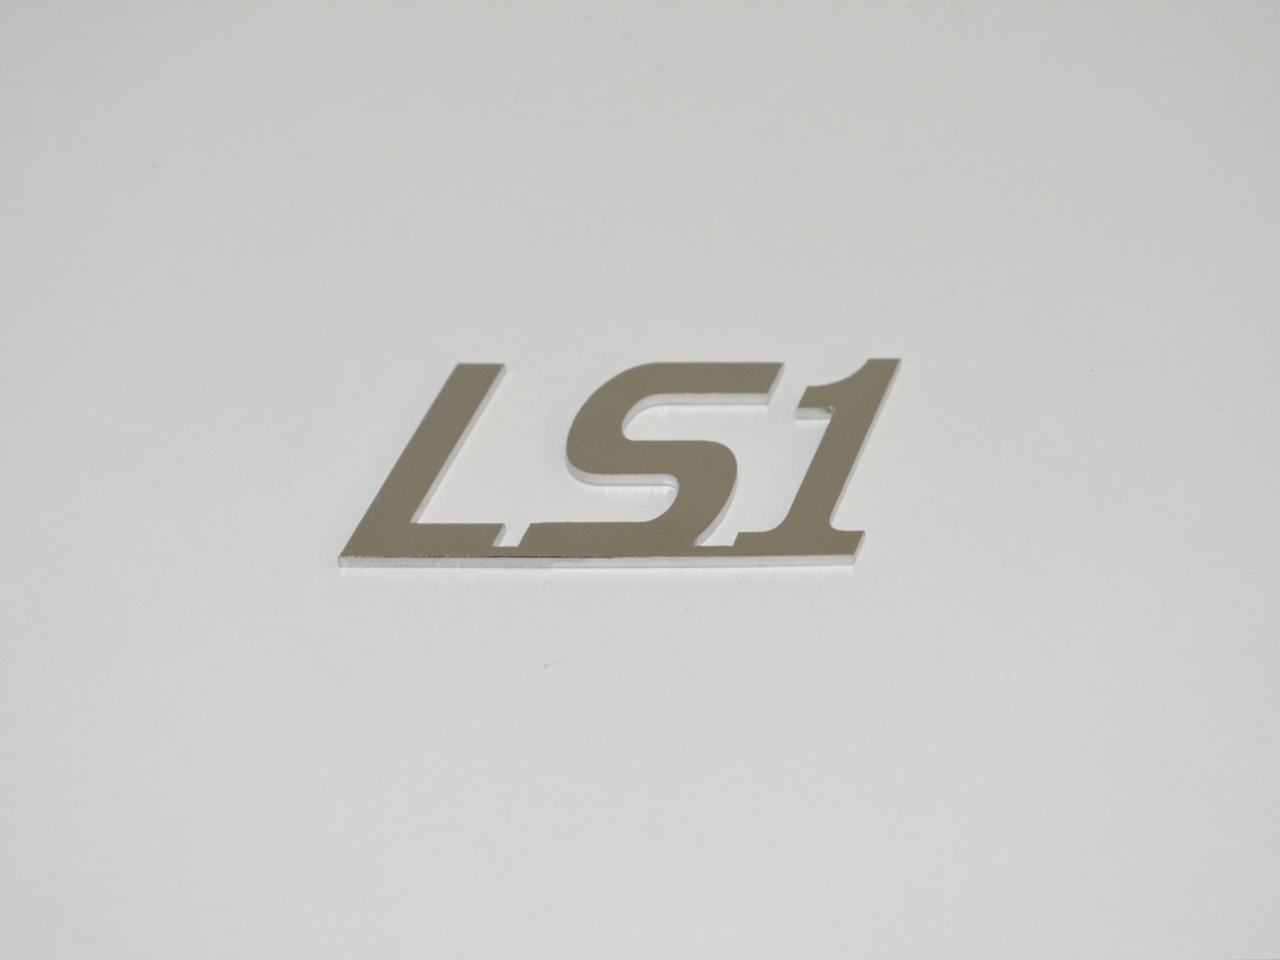 LS1 Emblem; - MorrisClassic.com, emblems